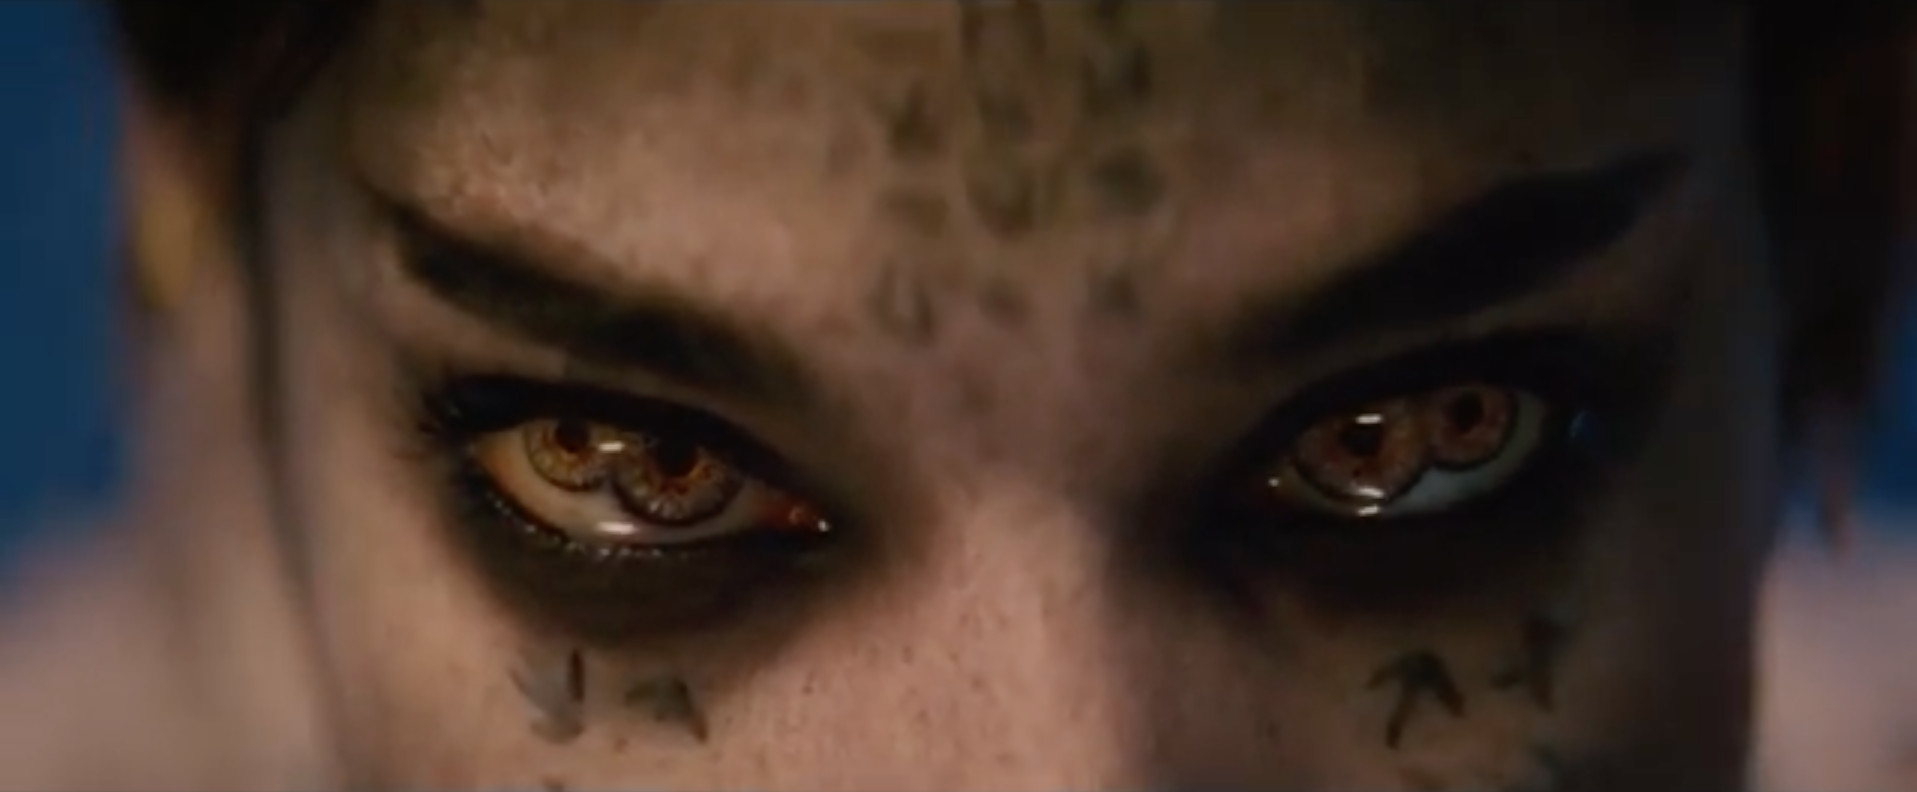 La momia: ¿una escena postgenérica con Johnny Depp y Javier Bardem?